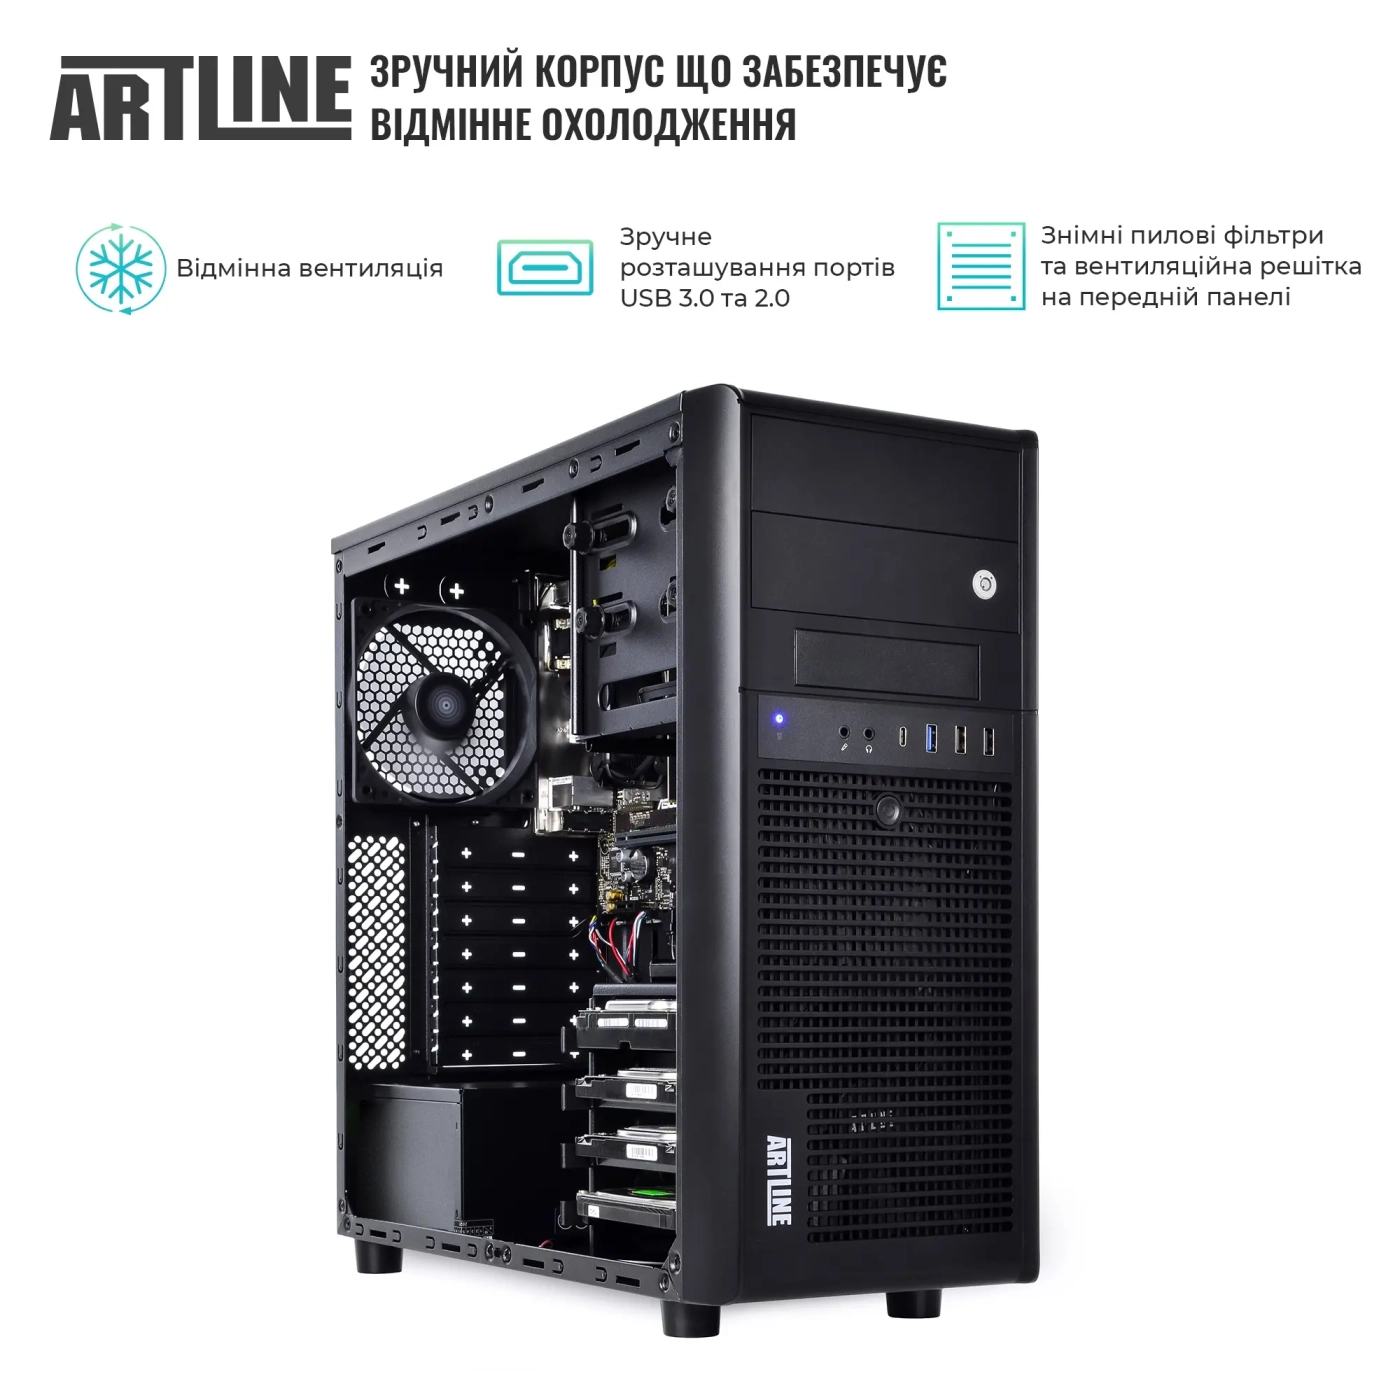 Купить Сервер ARTLINE Business T34 (T34v31) - фото 3